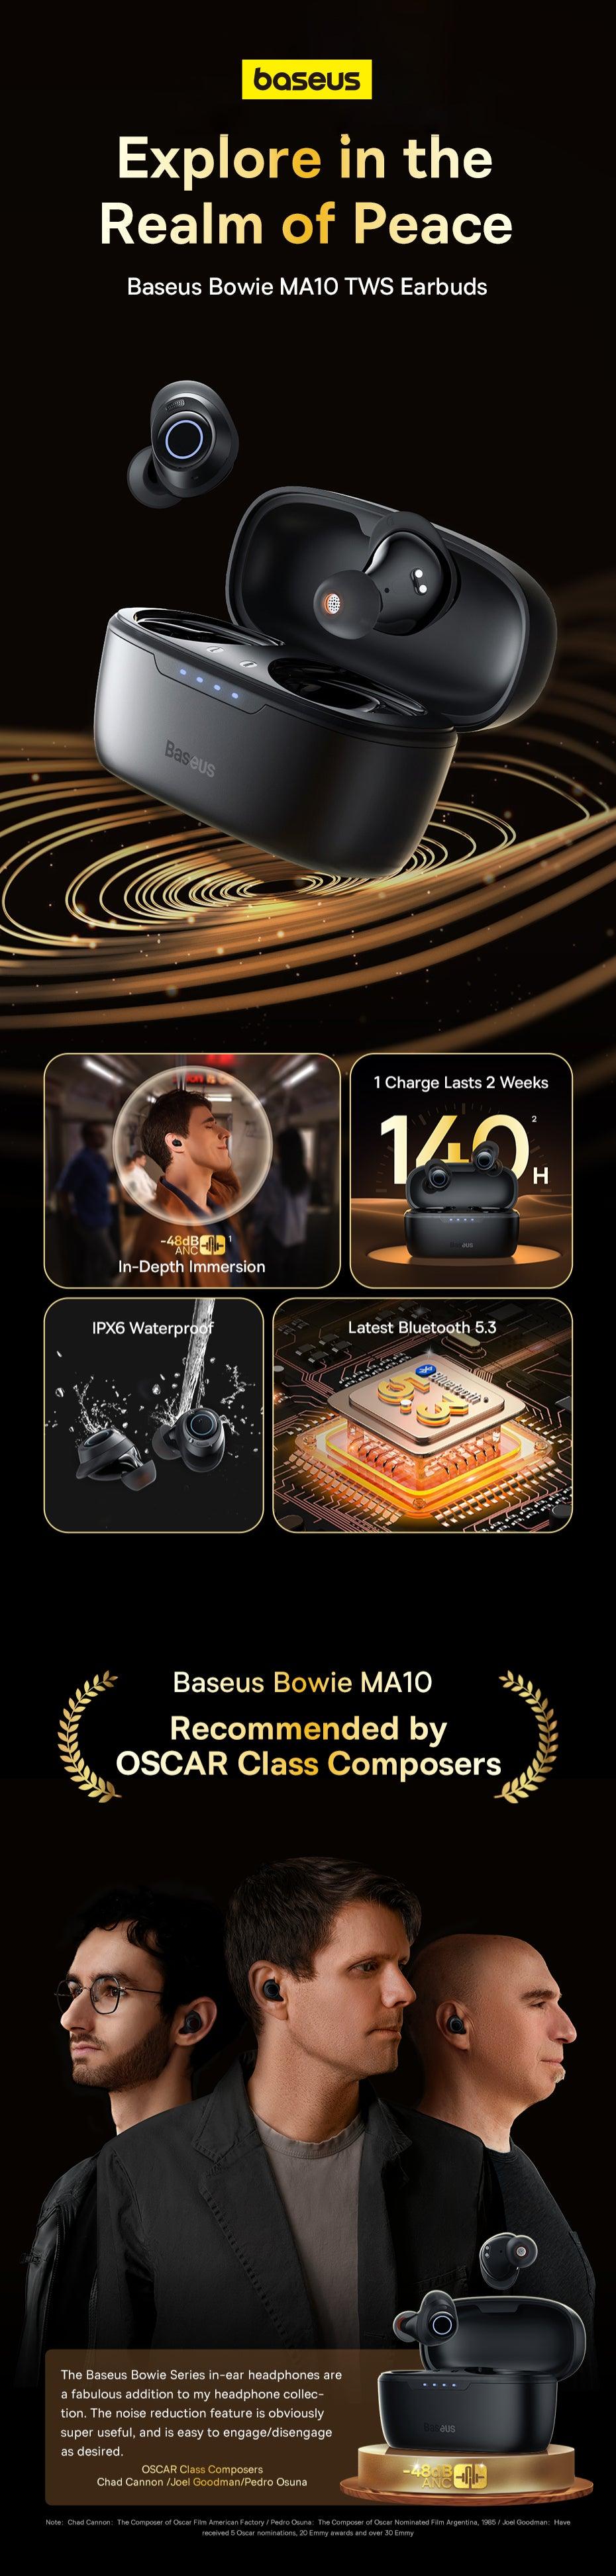 Baseus Bowie MA10 Pro Wireless Earphones 48dB ANC Wireless